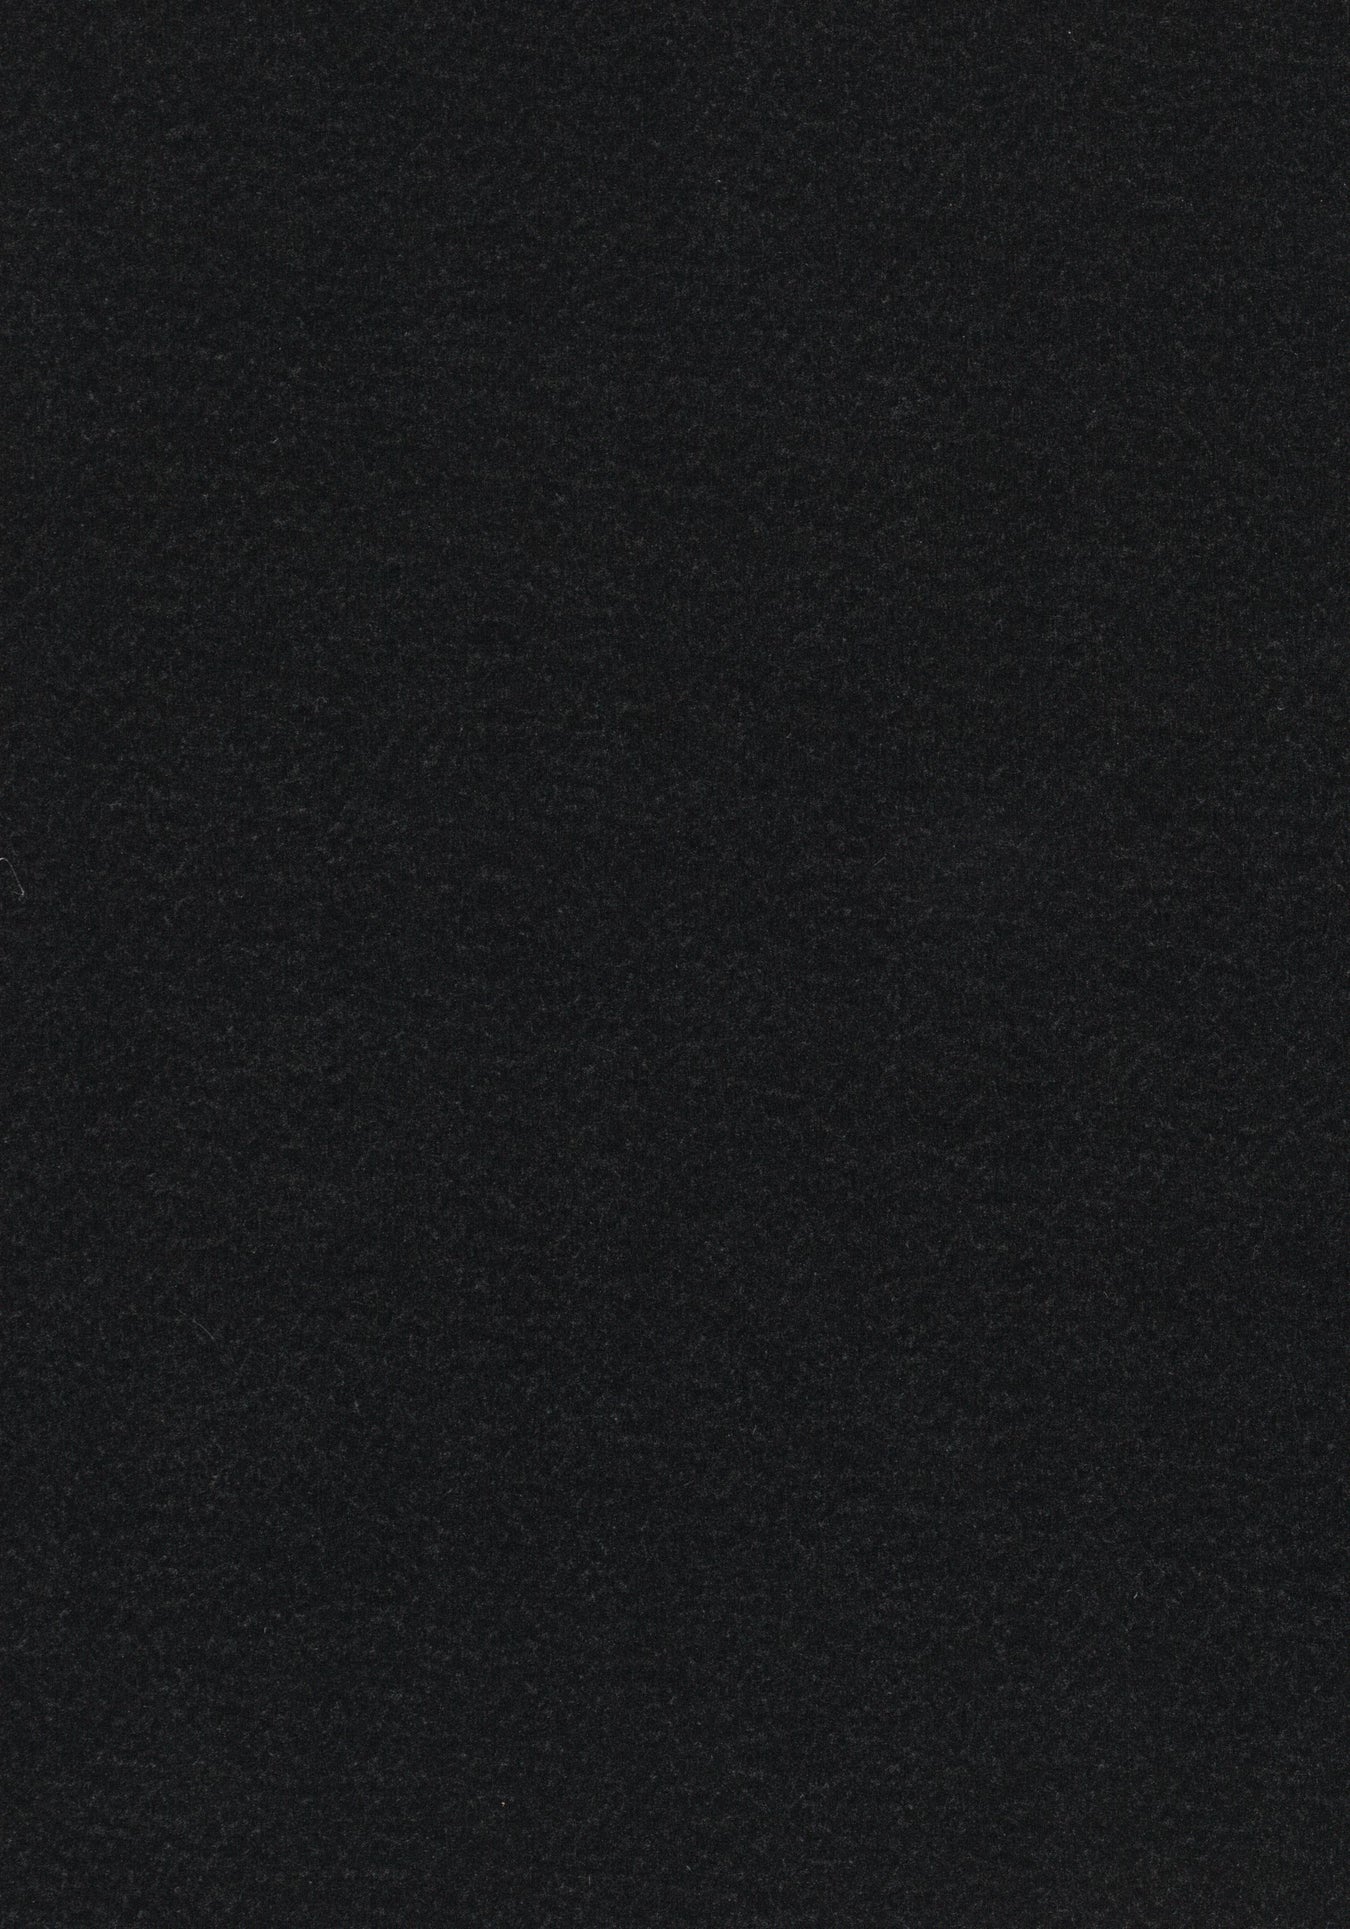 Marmoleum Sheet Walton - Black B&R: Flooring & Carpeting Forbo USA 